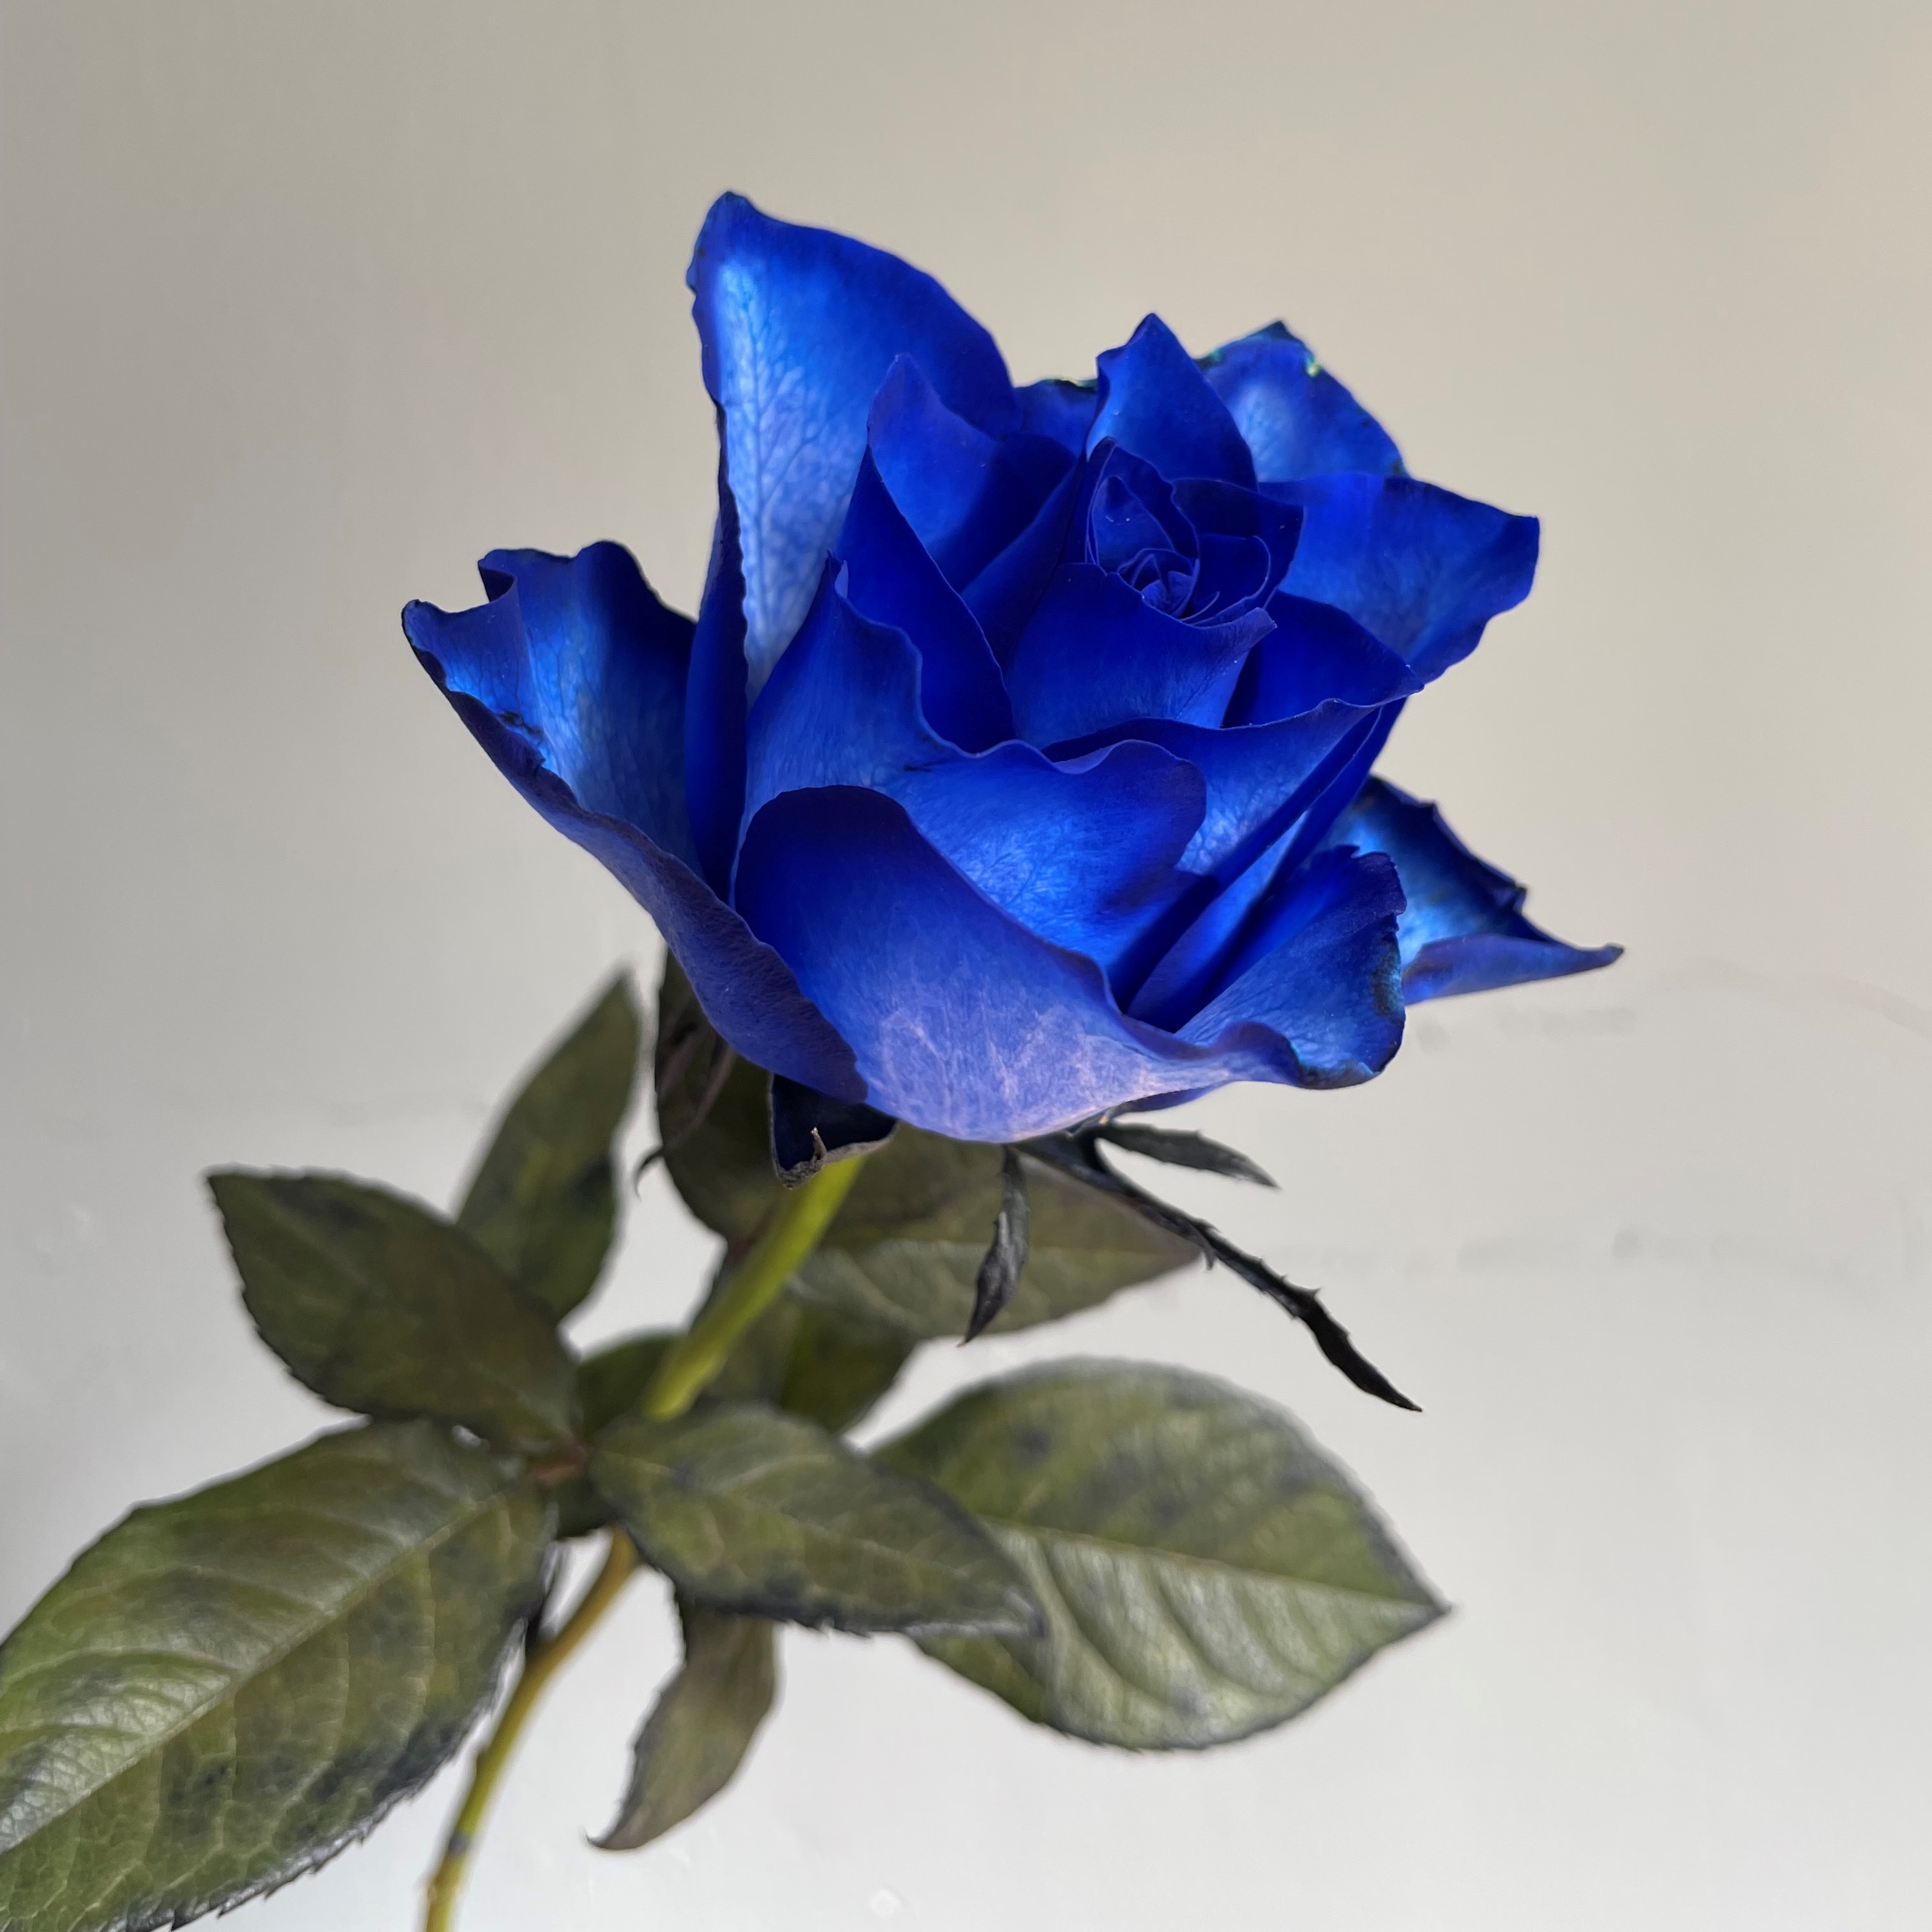 オリジナル ブルーローズ 青い薔薇 花束 108本のブルーローズブーケ プロポーズ Fucoa Cl